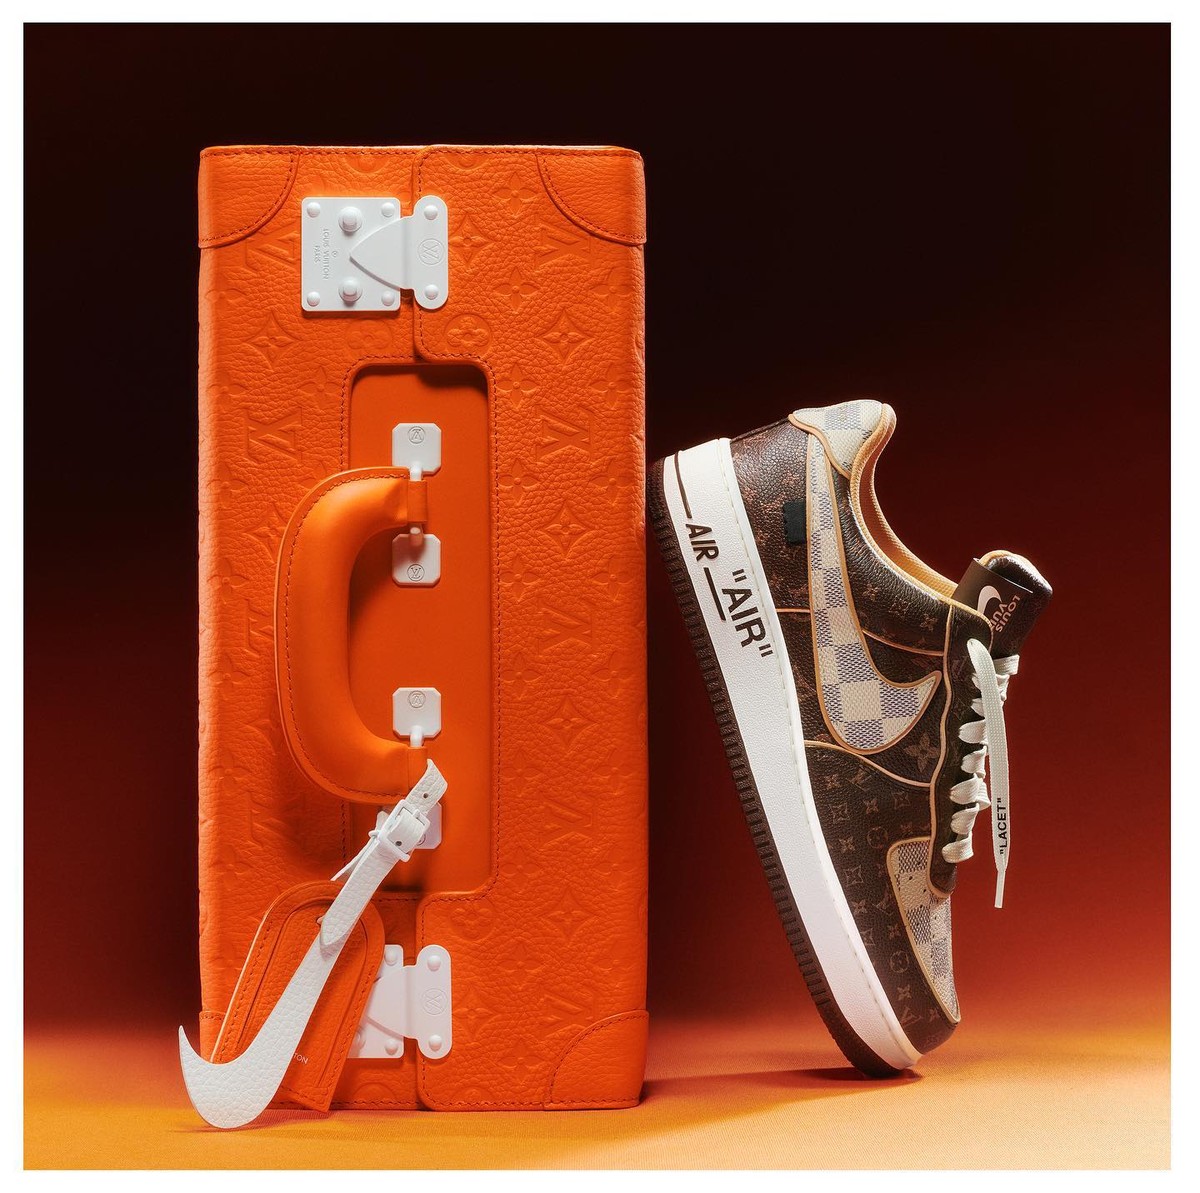 Tênis Nike/Louis Vuitton de Virgil Abloh supera estimativas de leilão antes mesmo de ser encerrado | Moda e beleza